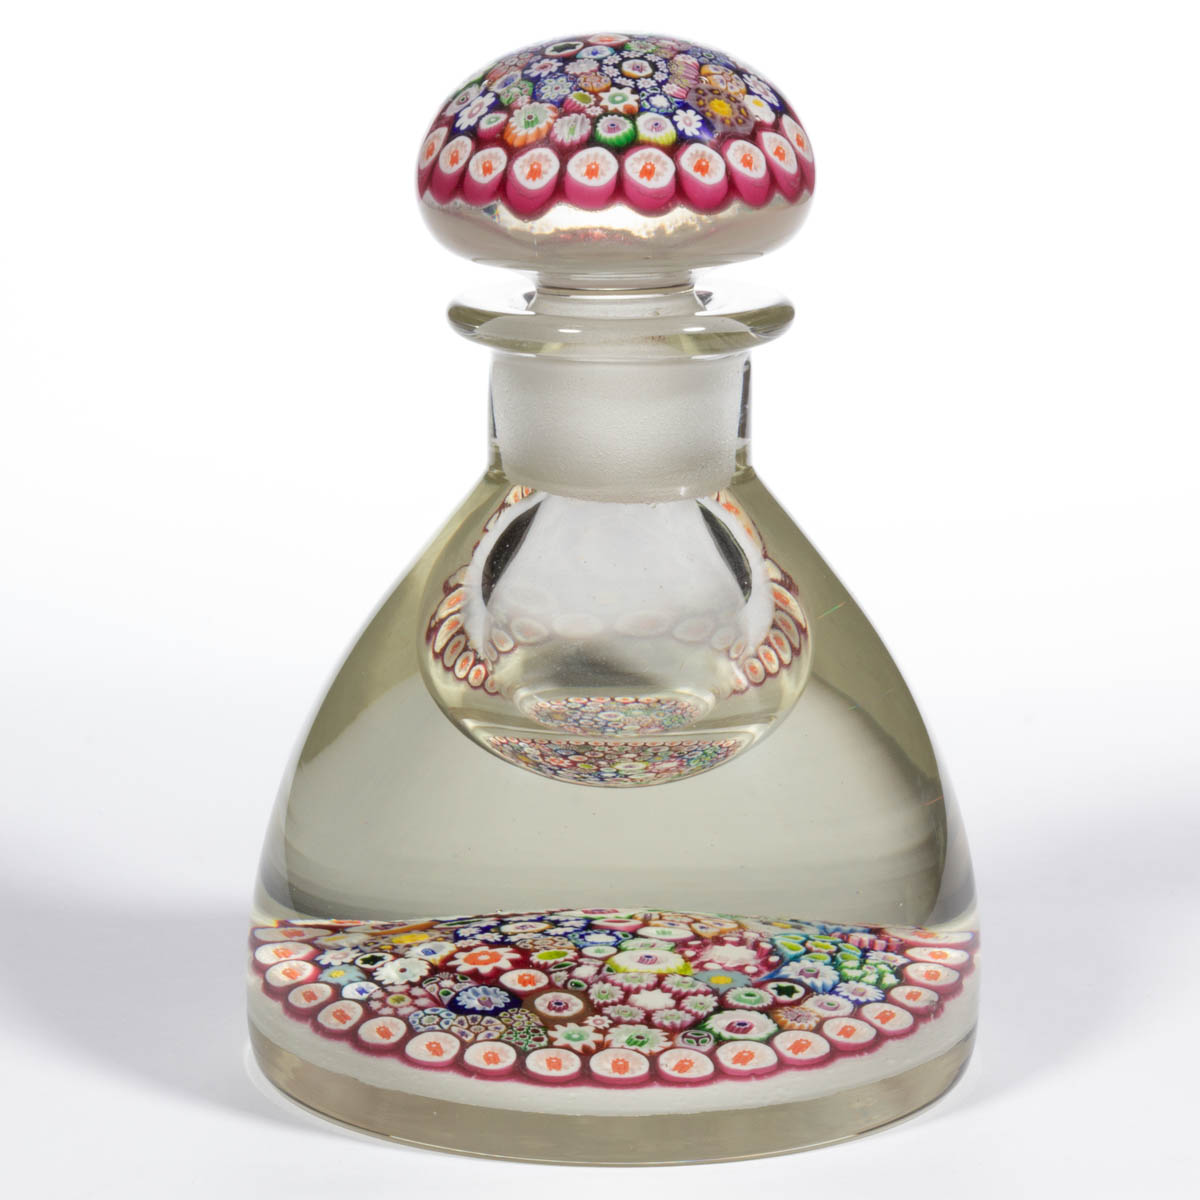 PAUL YSART (SCOTTISH, 1904-1979) ATTRIBUTED CLOSE-PACK MILLEFIORI ART GLASS PAPERWEIGHT INKWELL